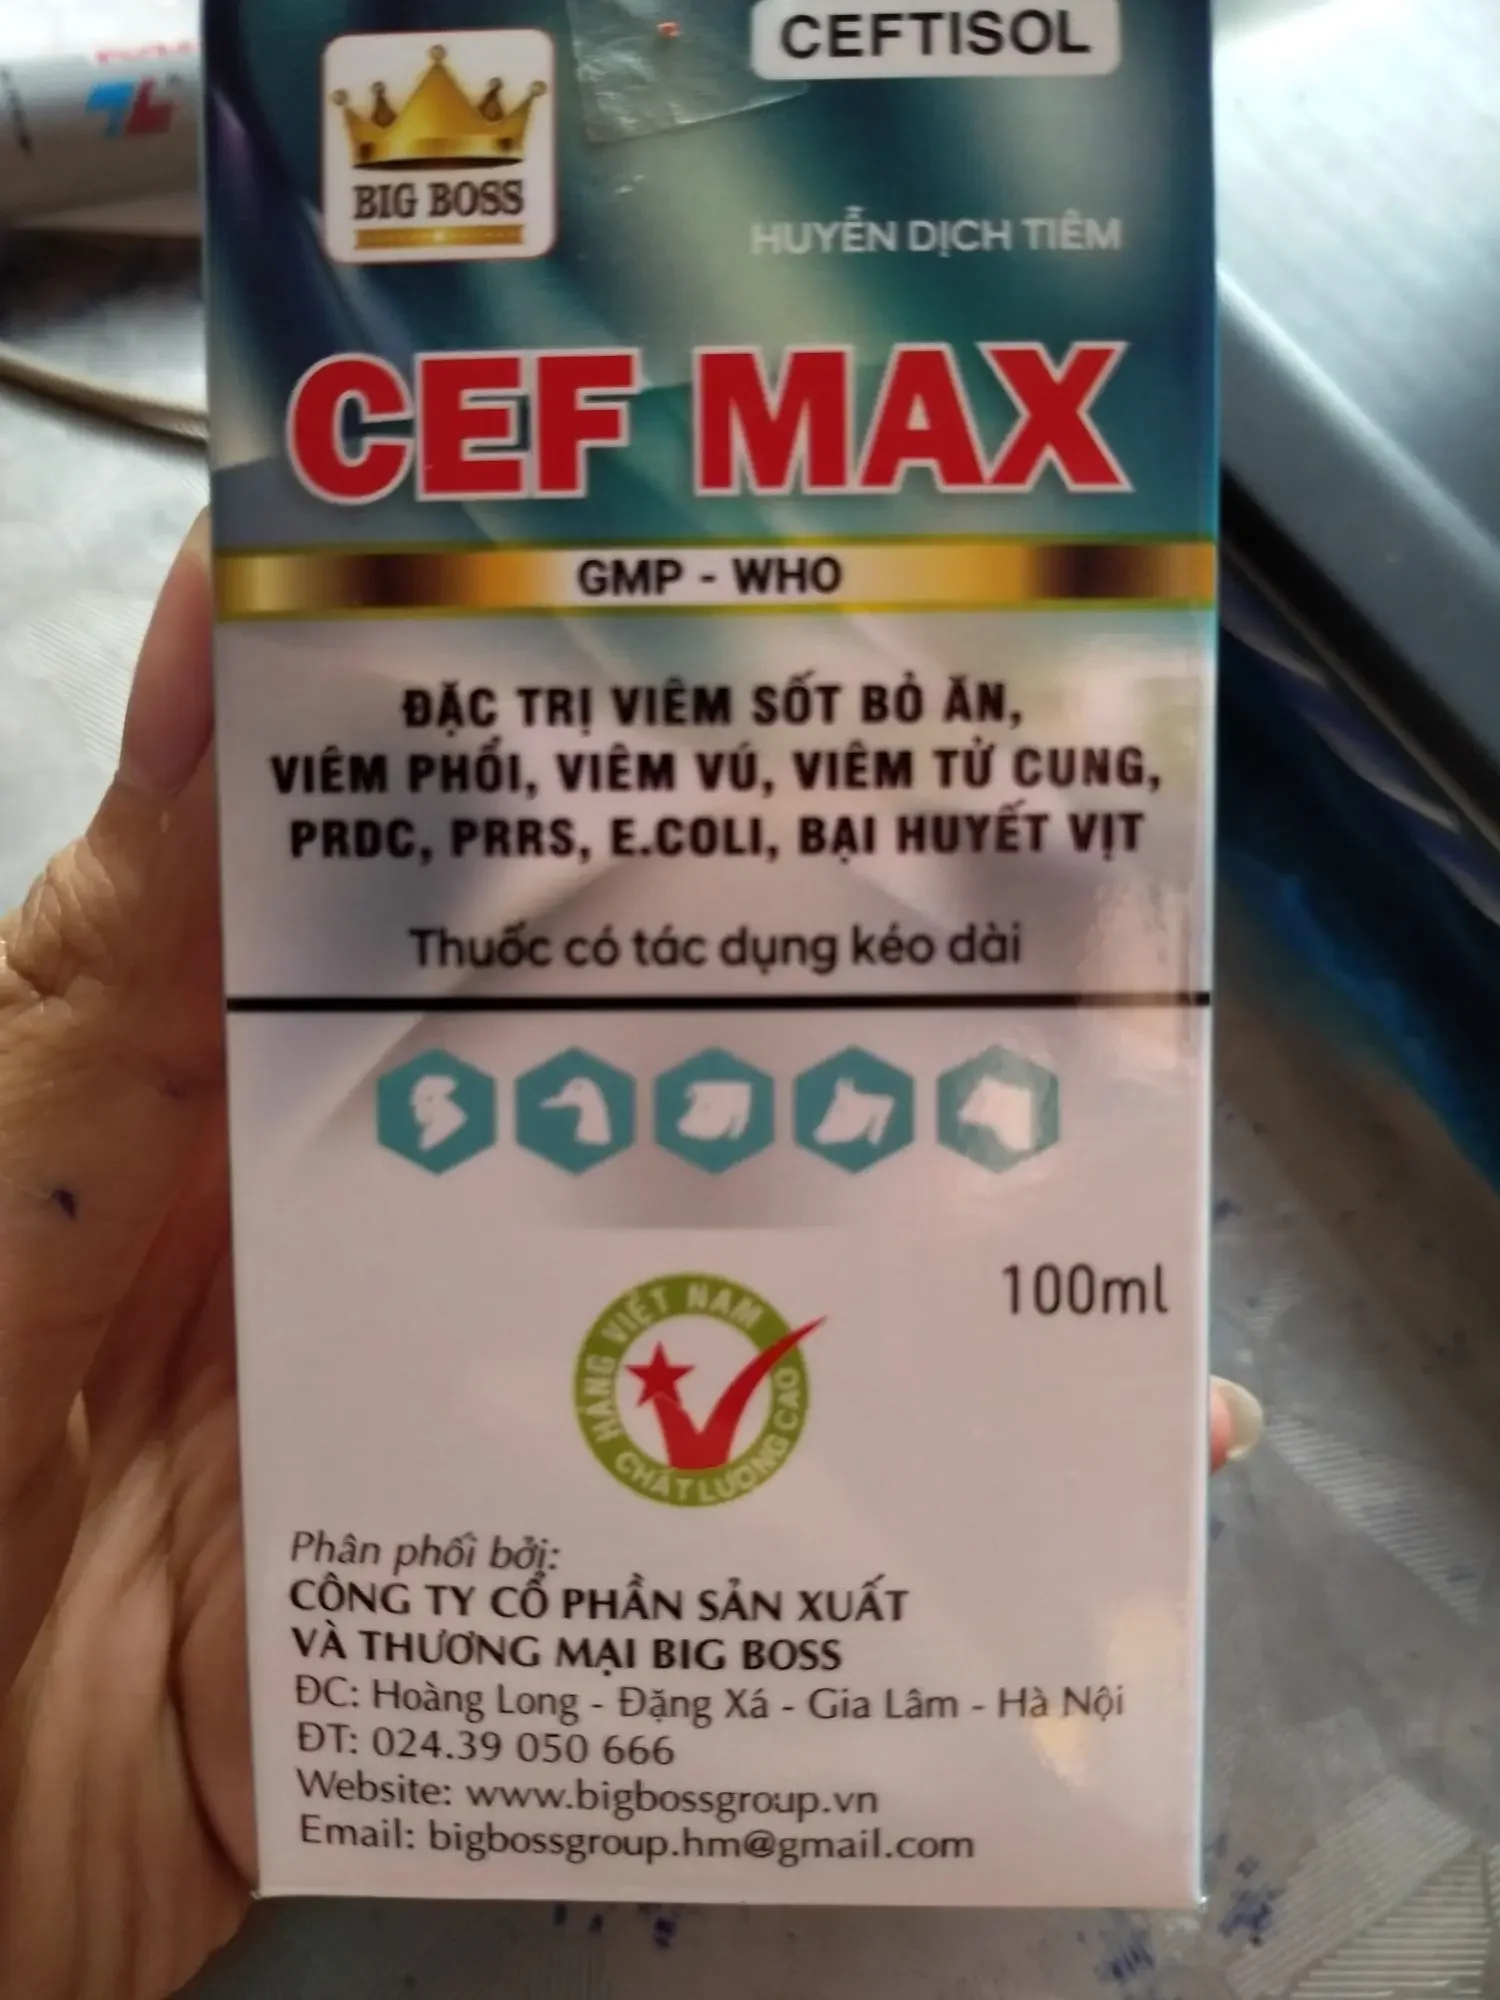 cef max 100ml - các loại viêm nhiễm